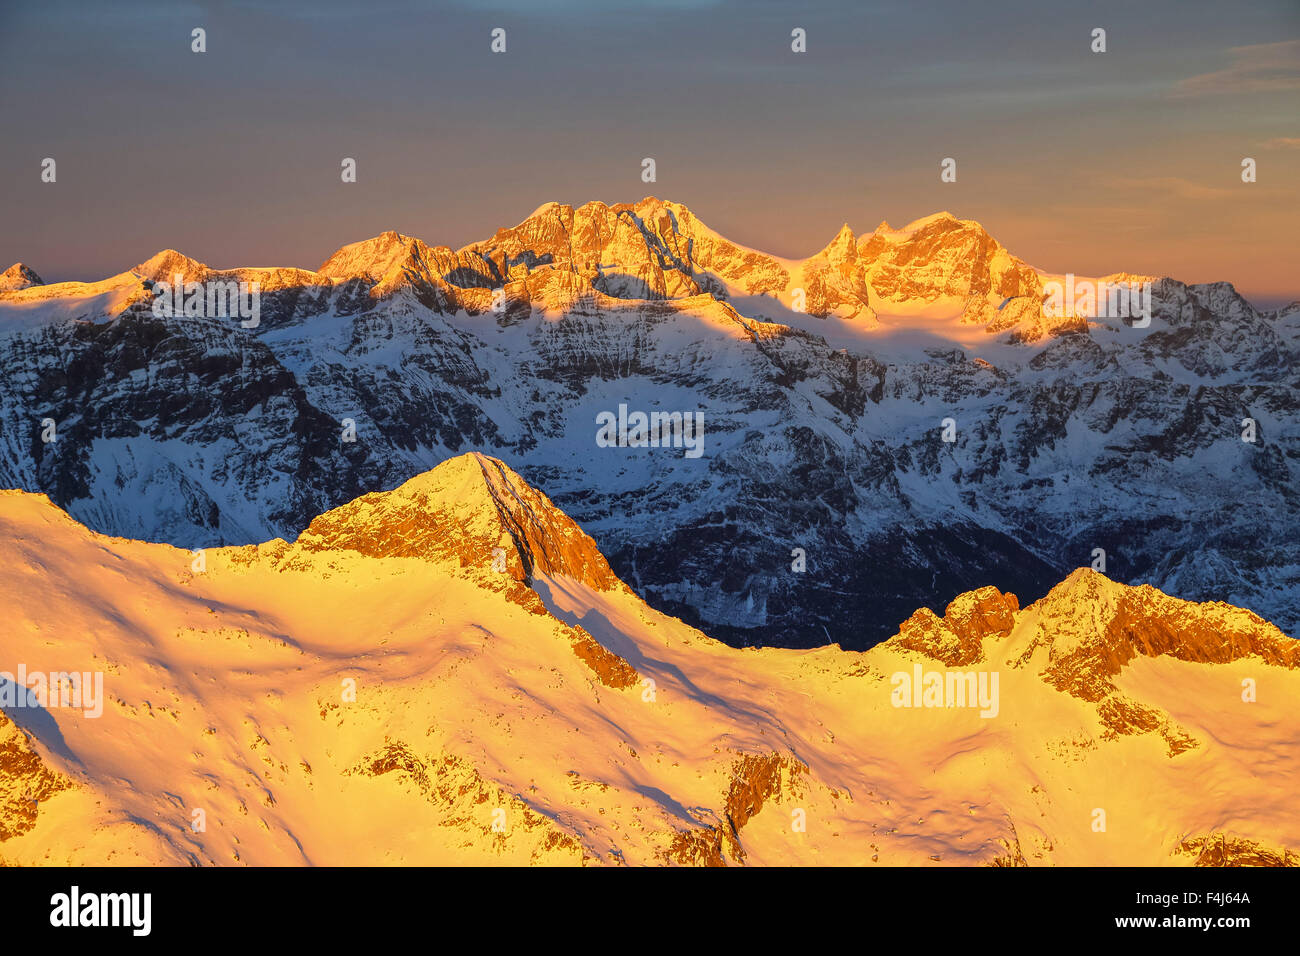 Vue aérienne de pointe de Baroni et groupe de la Bernina au coucher du soleil, Masino, vallée de la Valtellina, Lombardie, Italie, Europe Banque D'Images